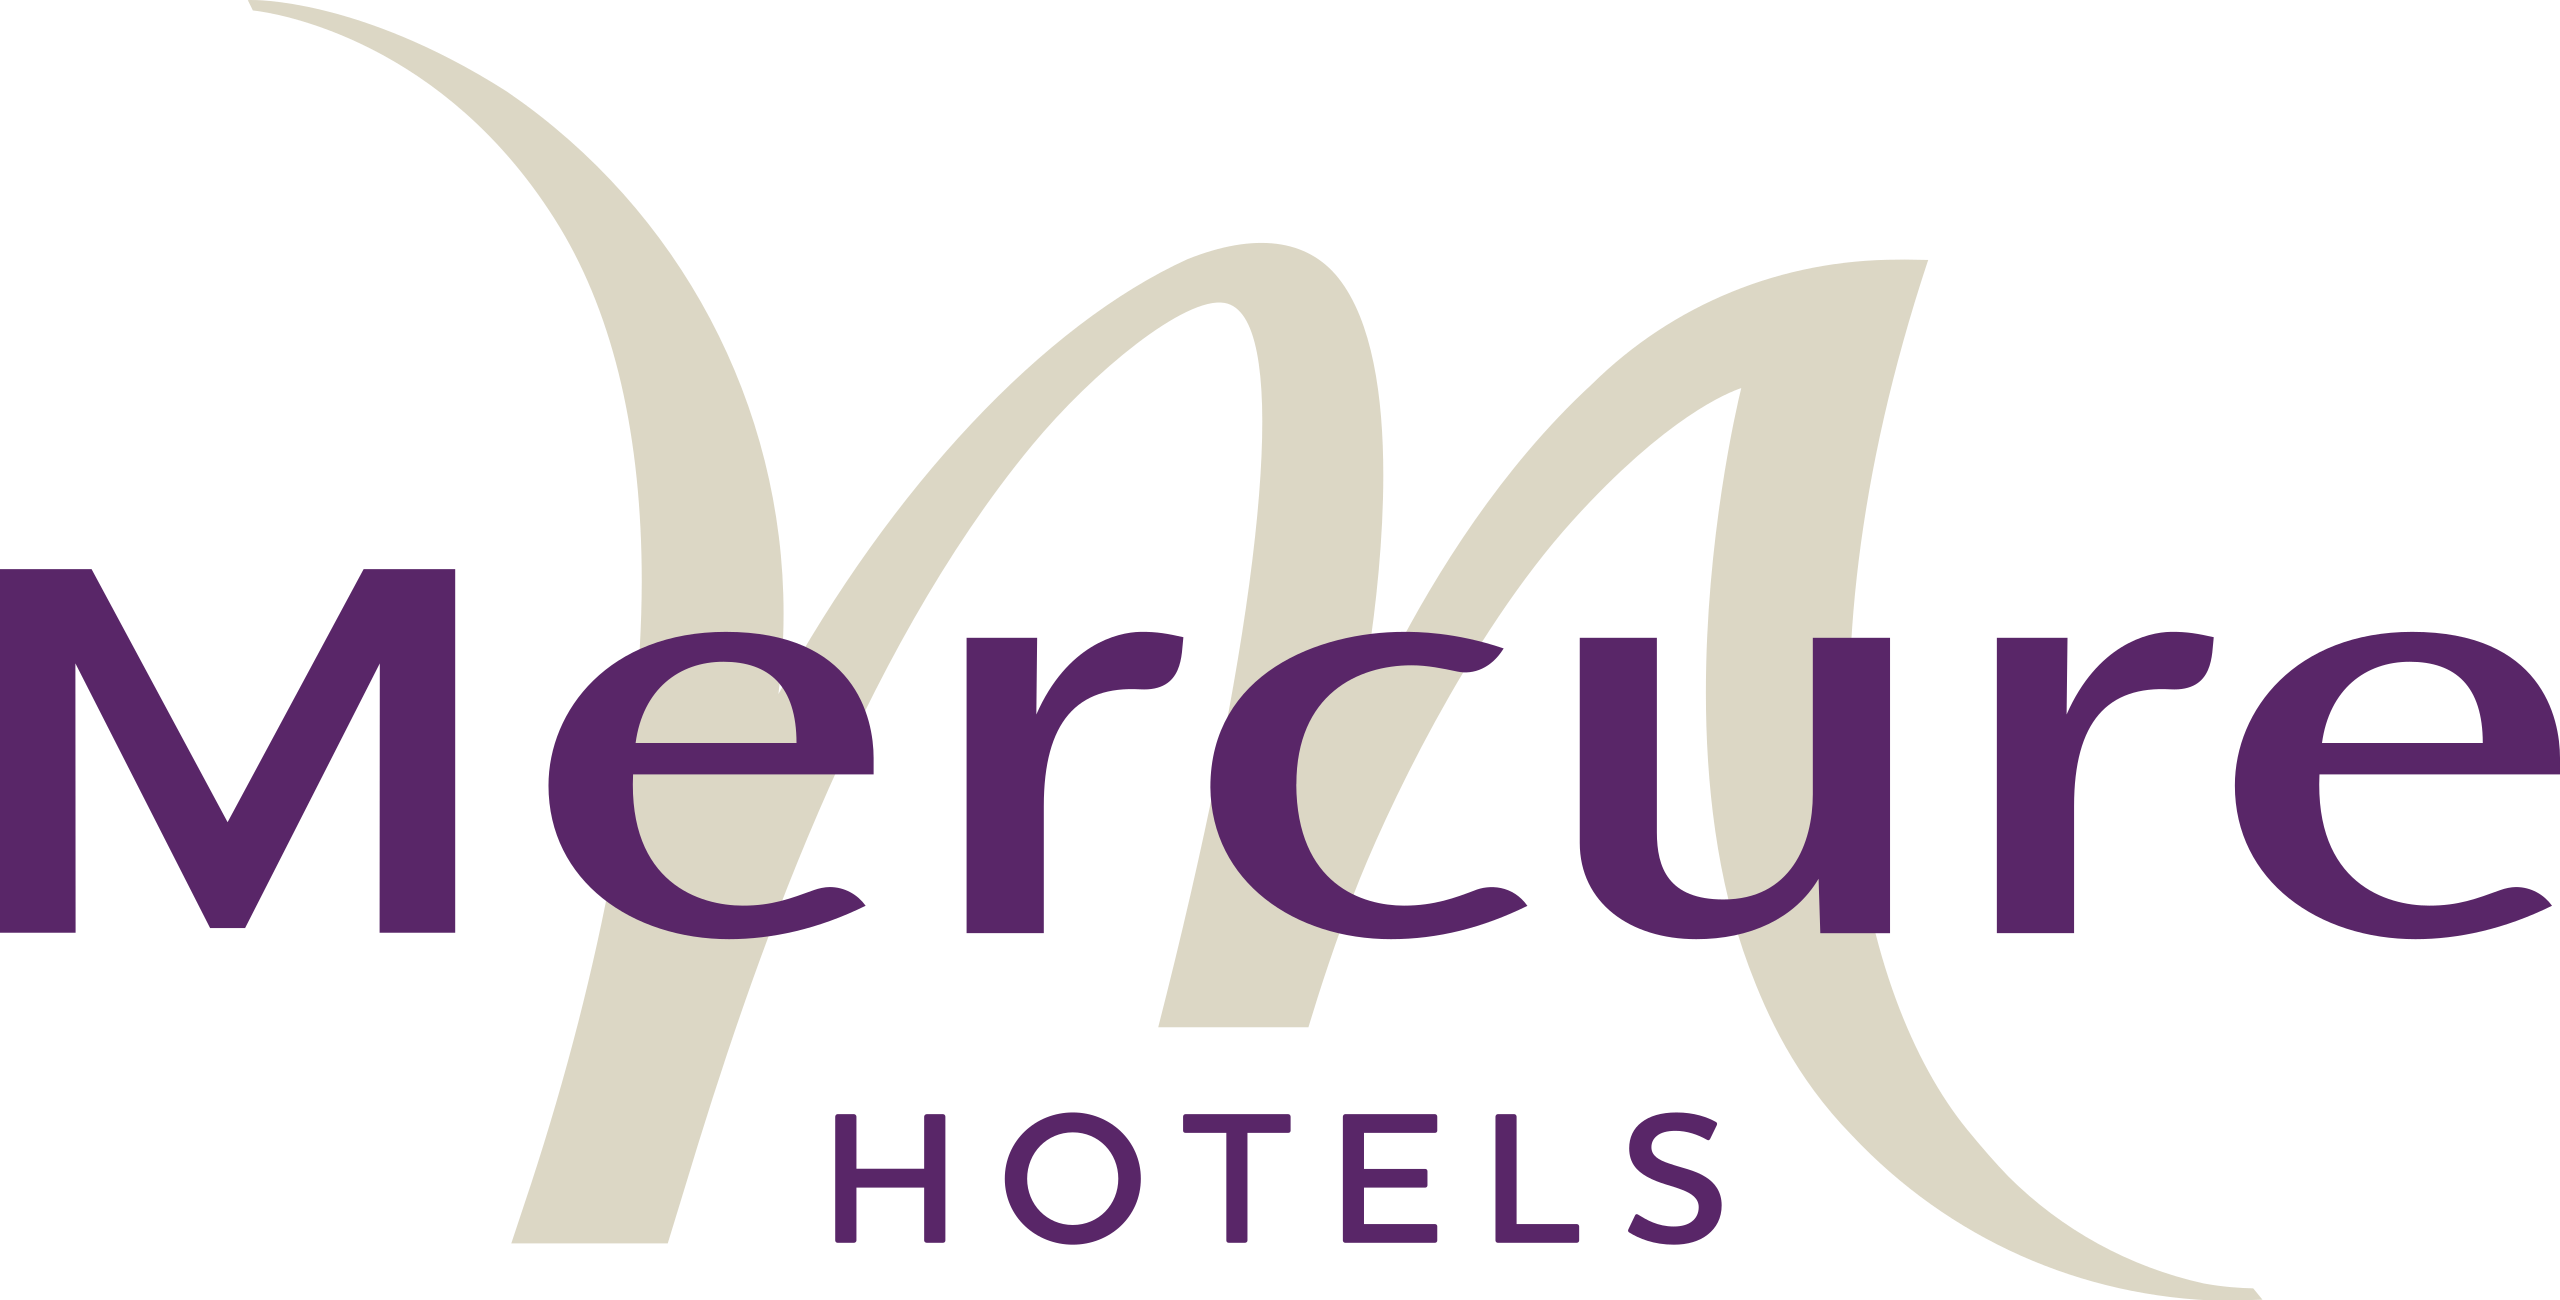 mercure hospitality job assessment for hotel jobs